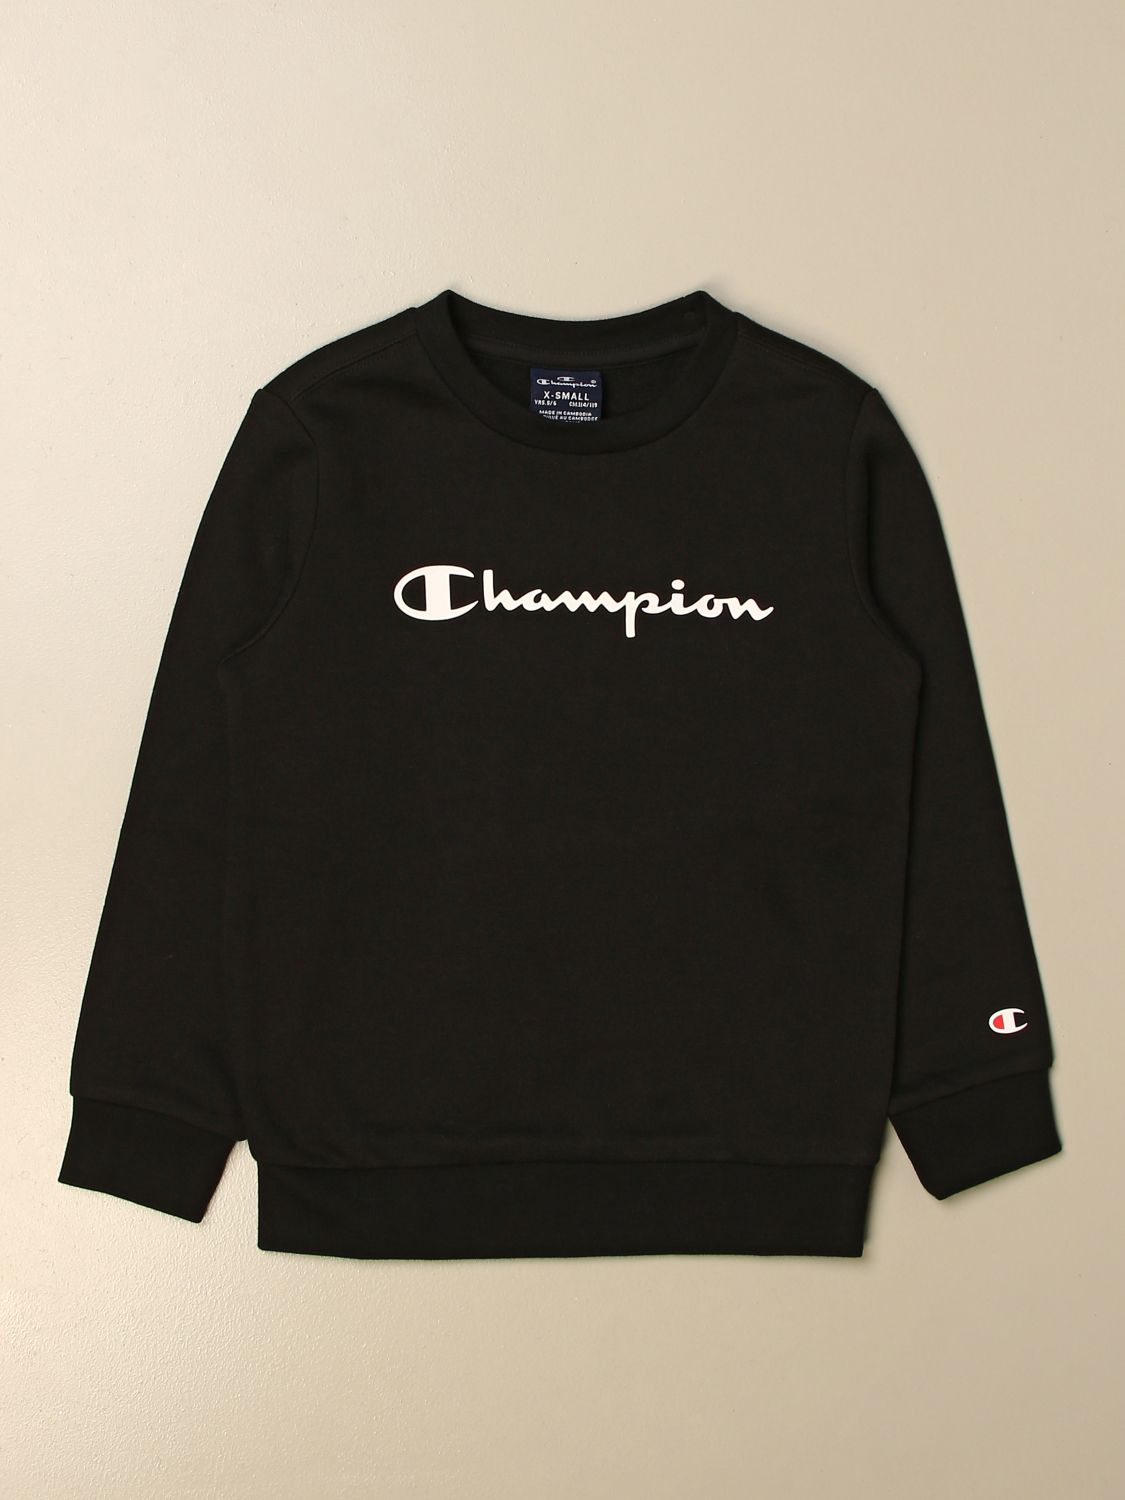 CHAMPION: jumper for boy - Black 1 | Champion jumper 305360 online on ...